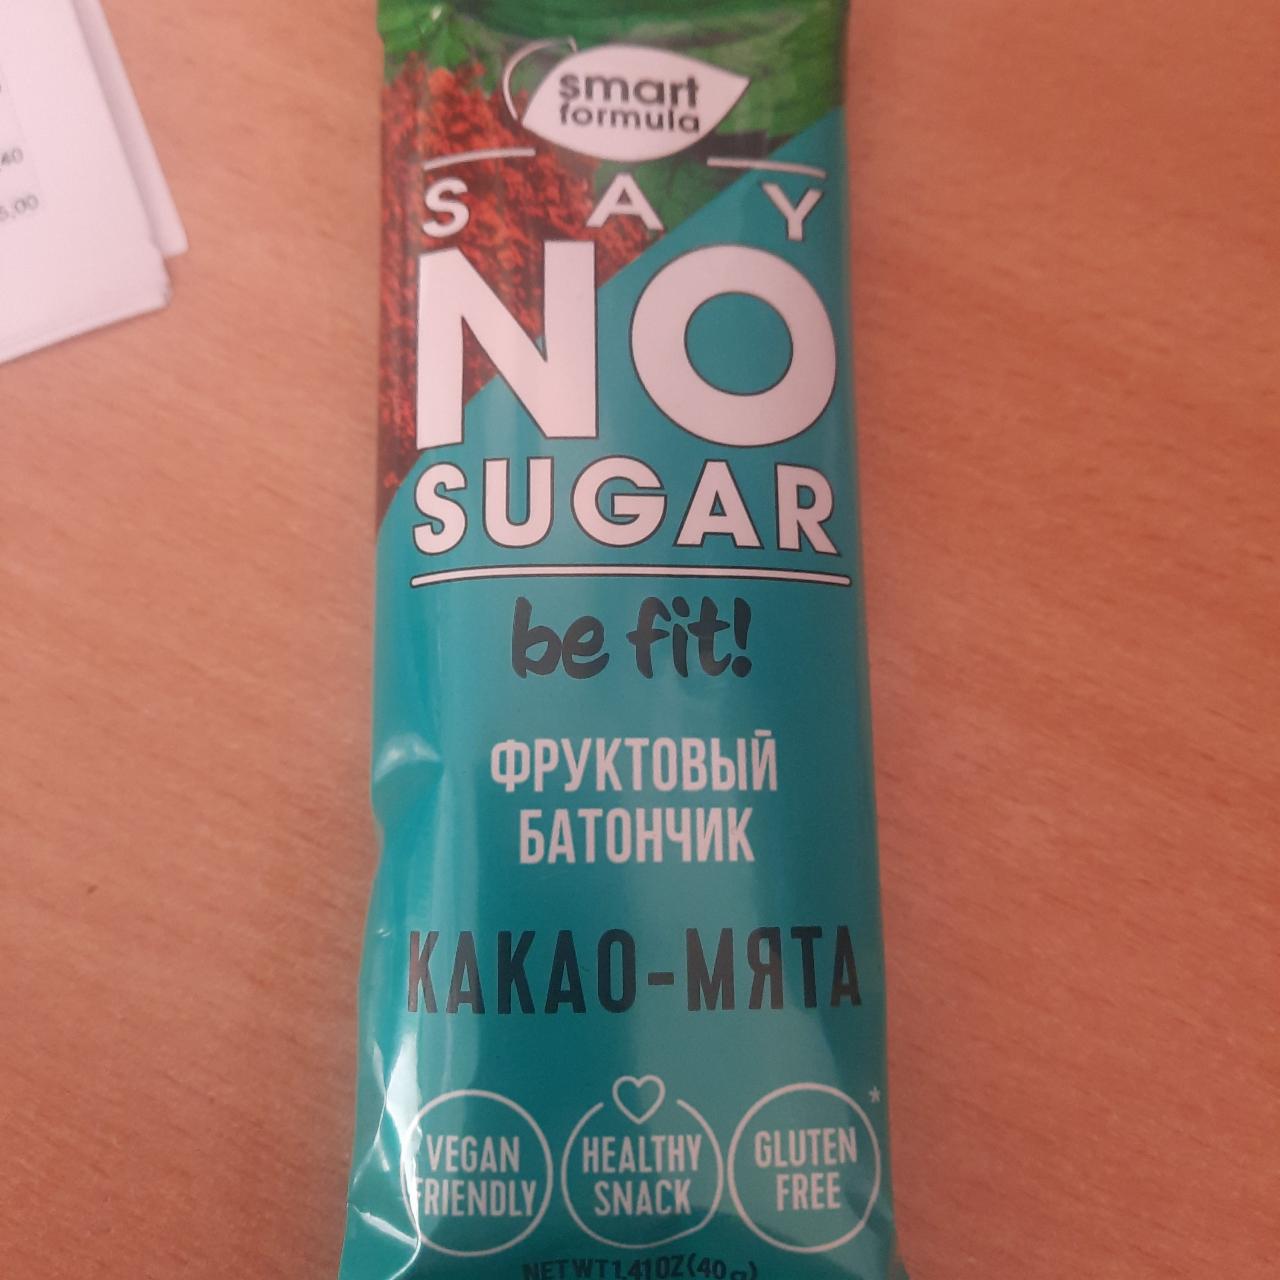 Фото - Фруктовый батончик say no sugar какао-мята Smart formula